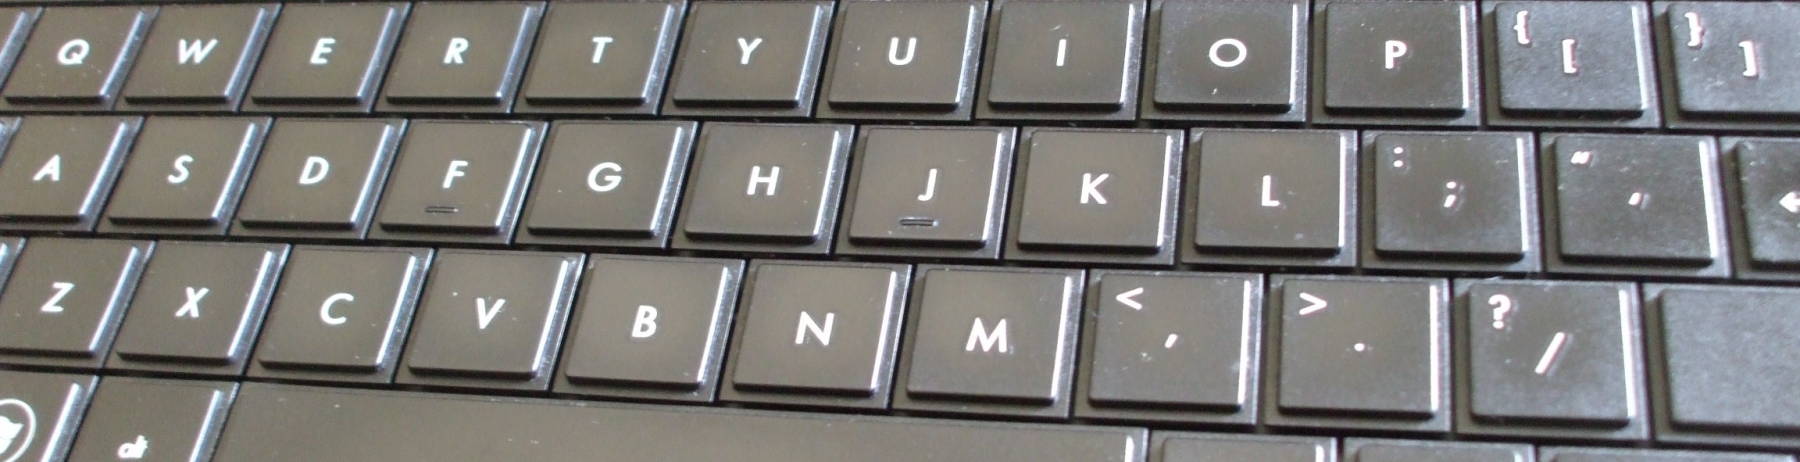 Linux keyboard.